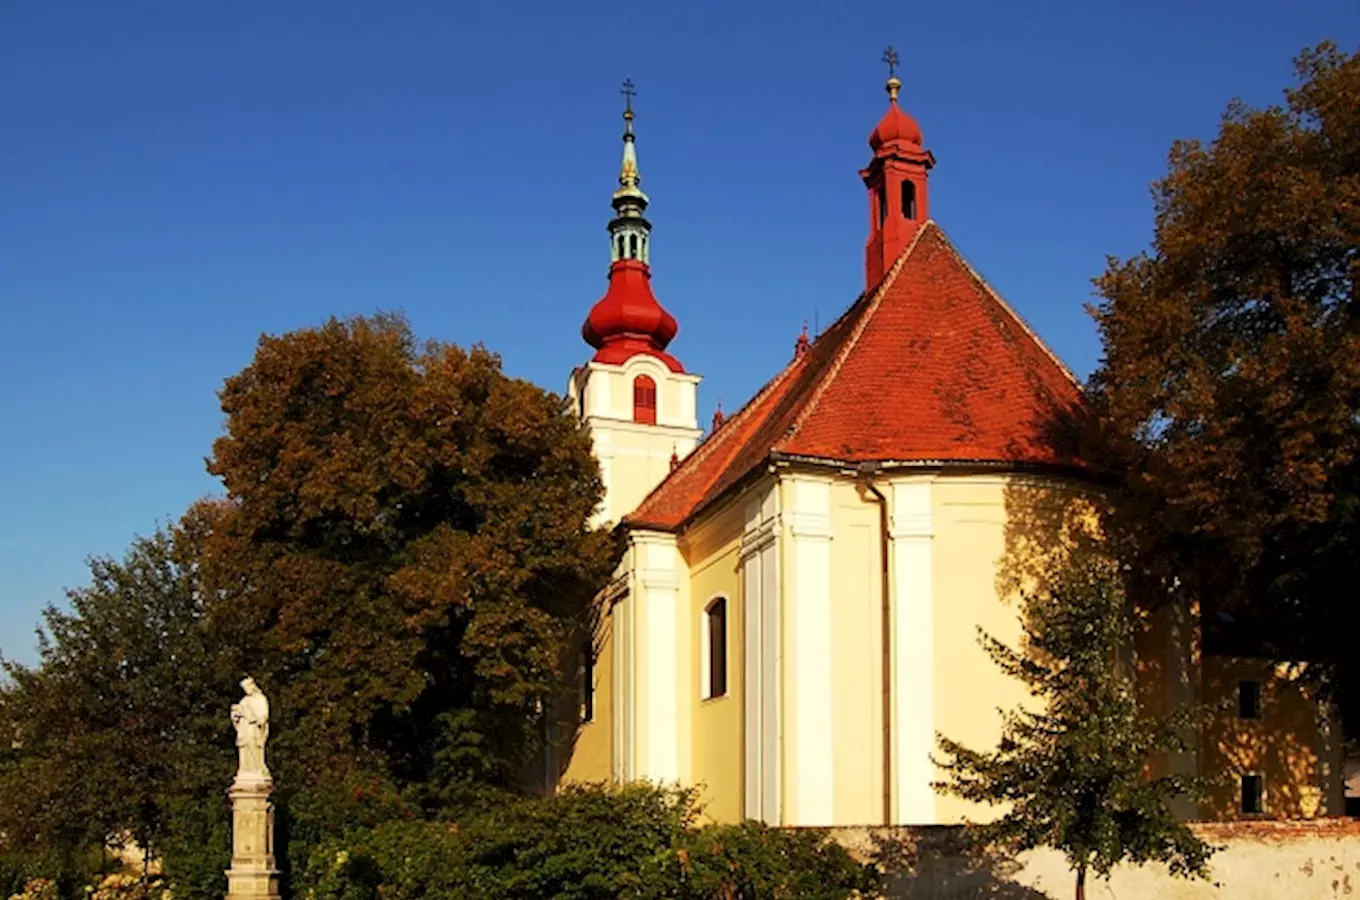 Kostel sv. Václava v Hulíně s románským portálem